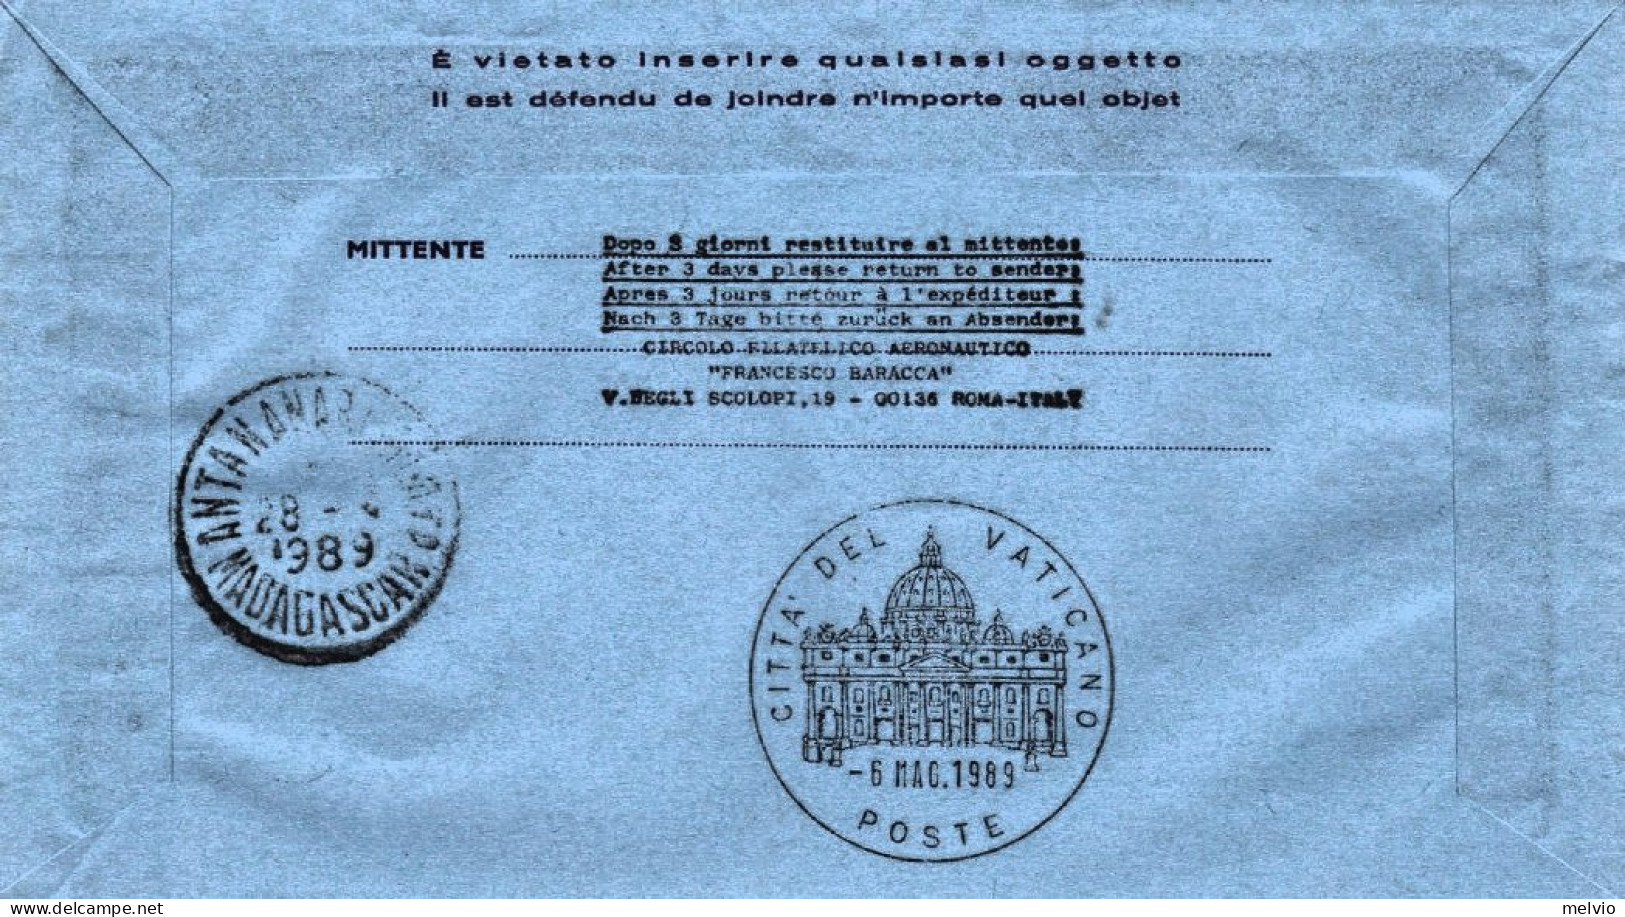 1989-Vaticano Antananarivo (Madagascar) Dispaccio Aereo Straordinario Del 28 Apr - Poste Aérienne